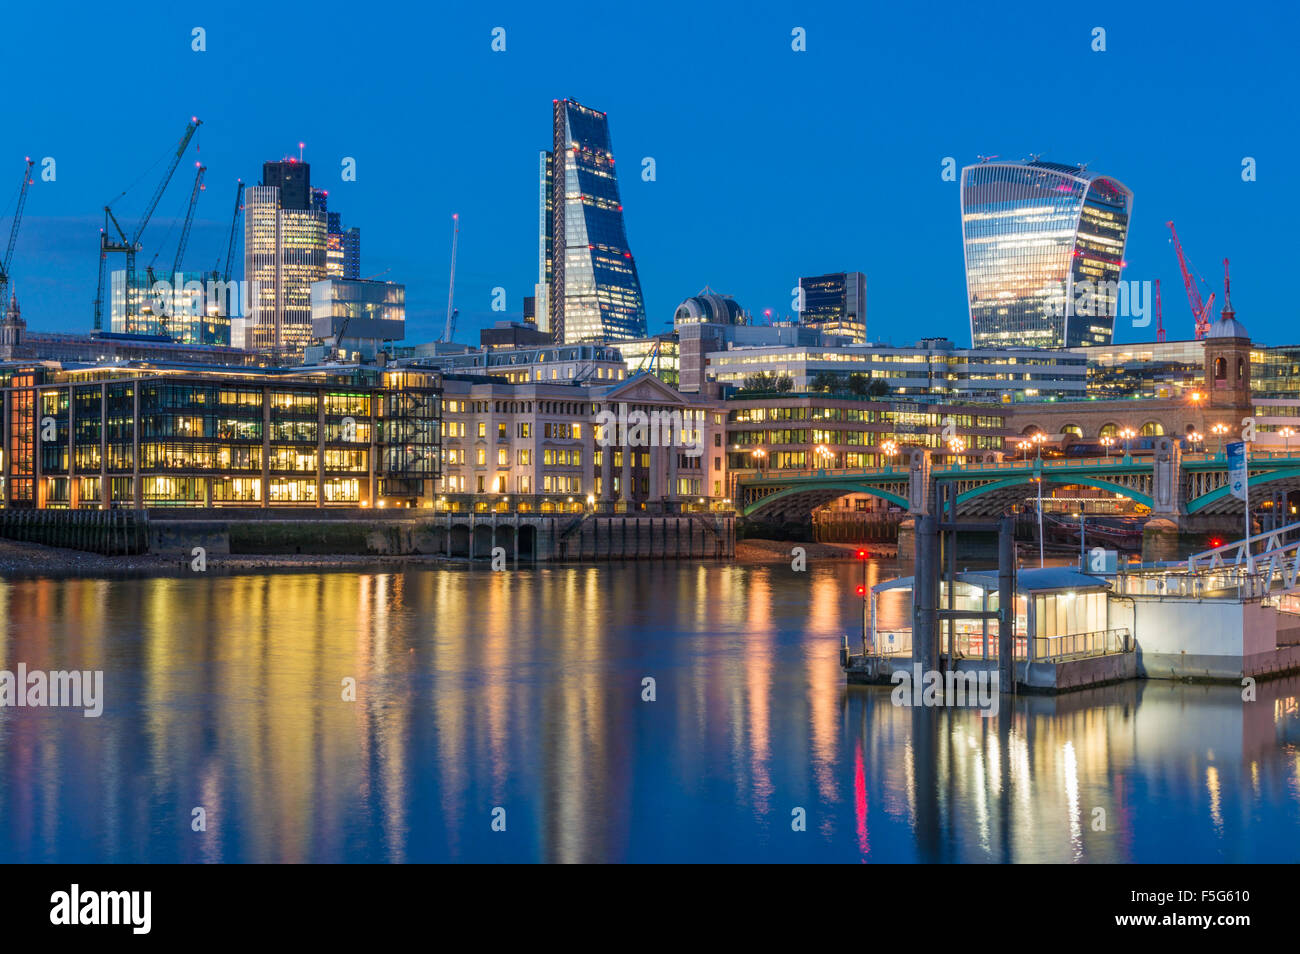 Ville de London Skyline gratte-ciels du quartier financier au coucher du soleil Tamise Ville de London UK GB EU Europe Banque D'Images